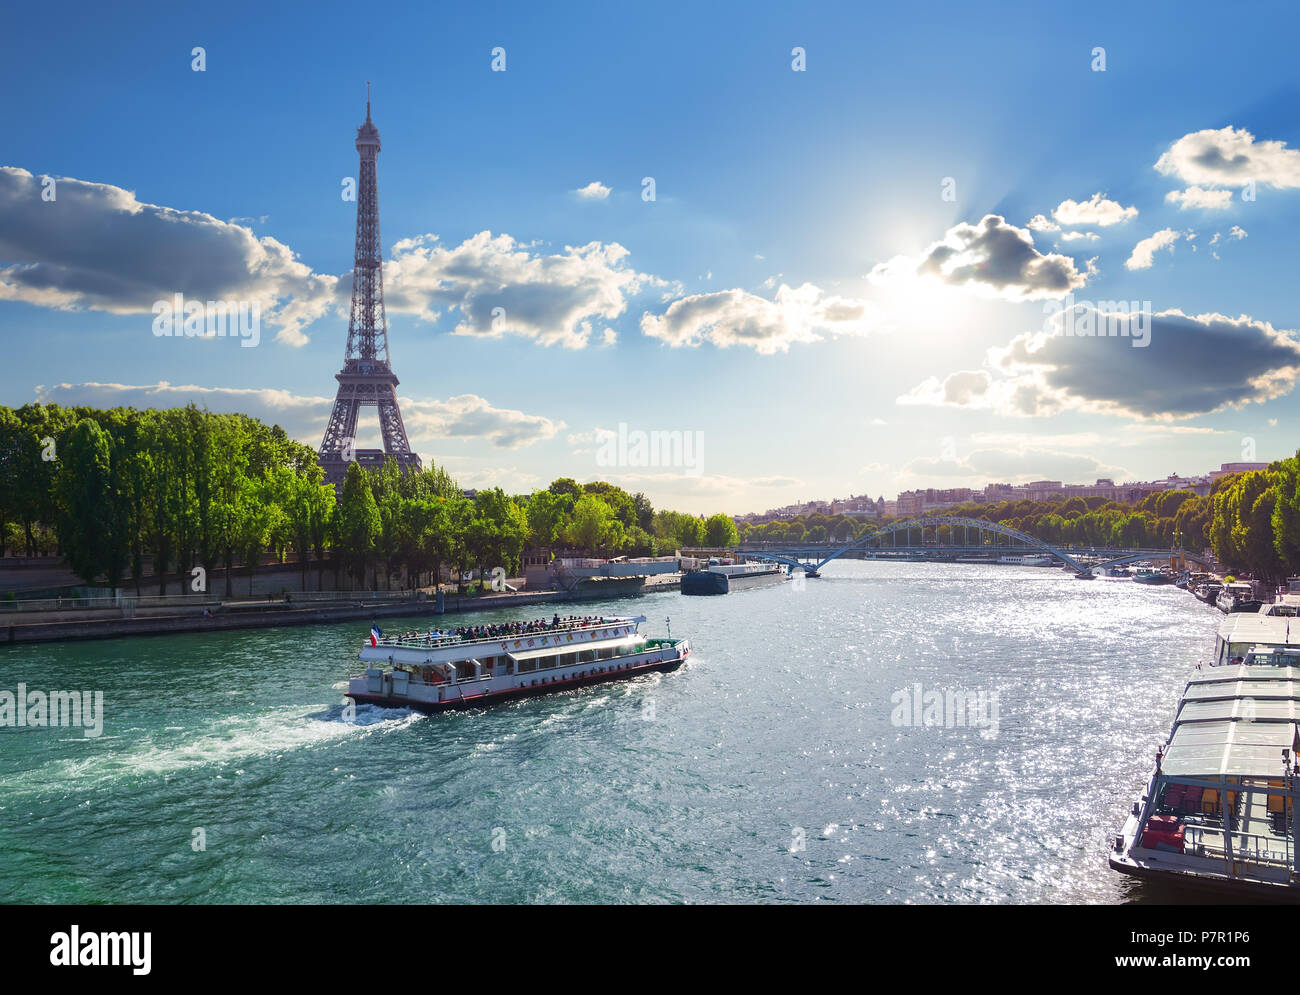 La Tour Eiffel et le pont Iena sur la Seine à Paris, France. Banque D'Images